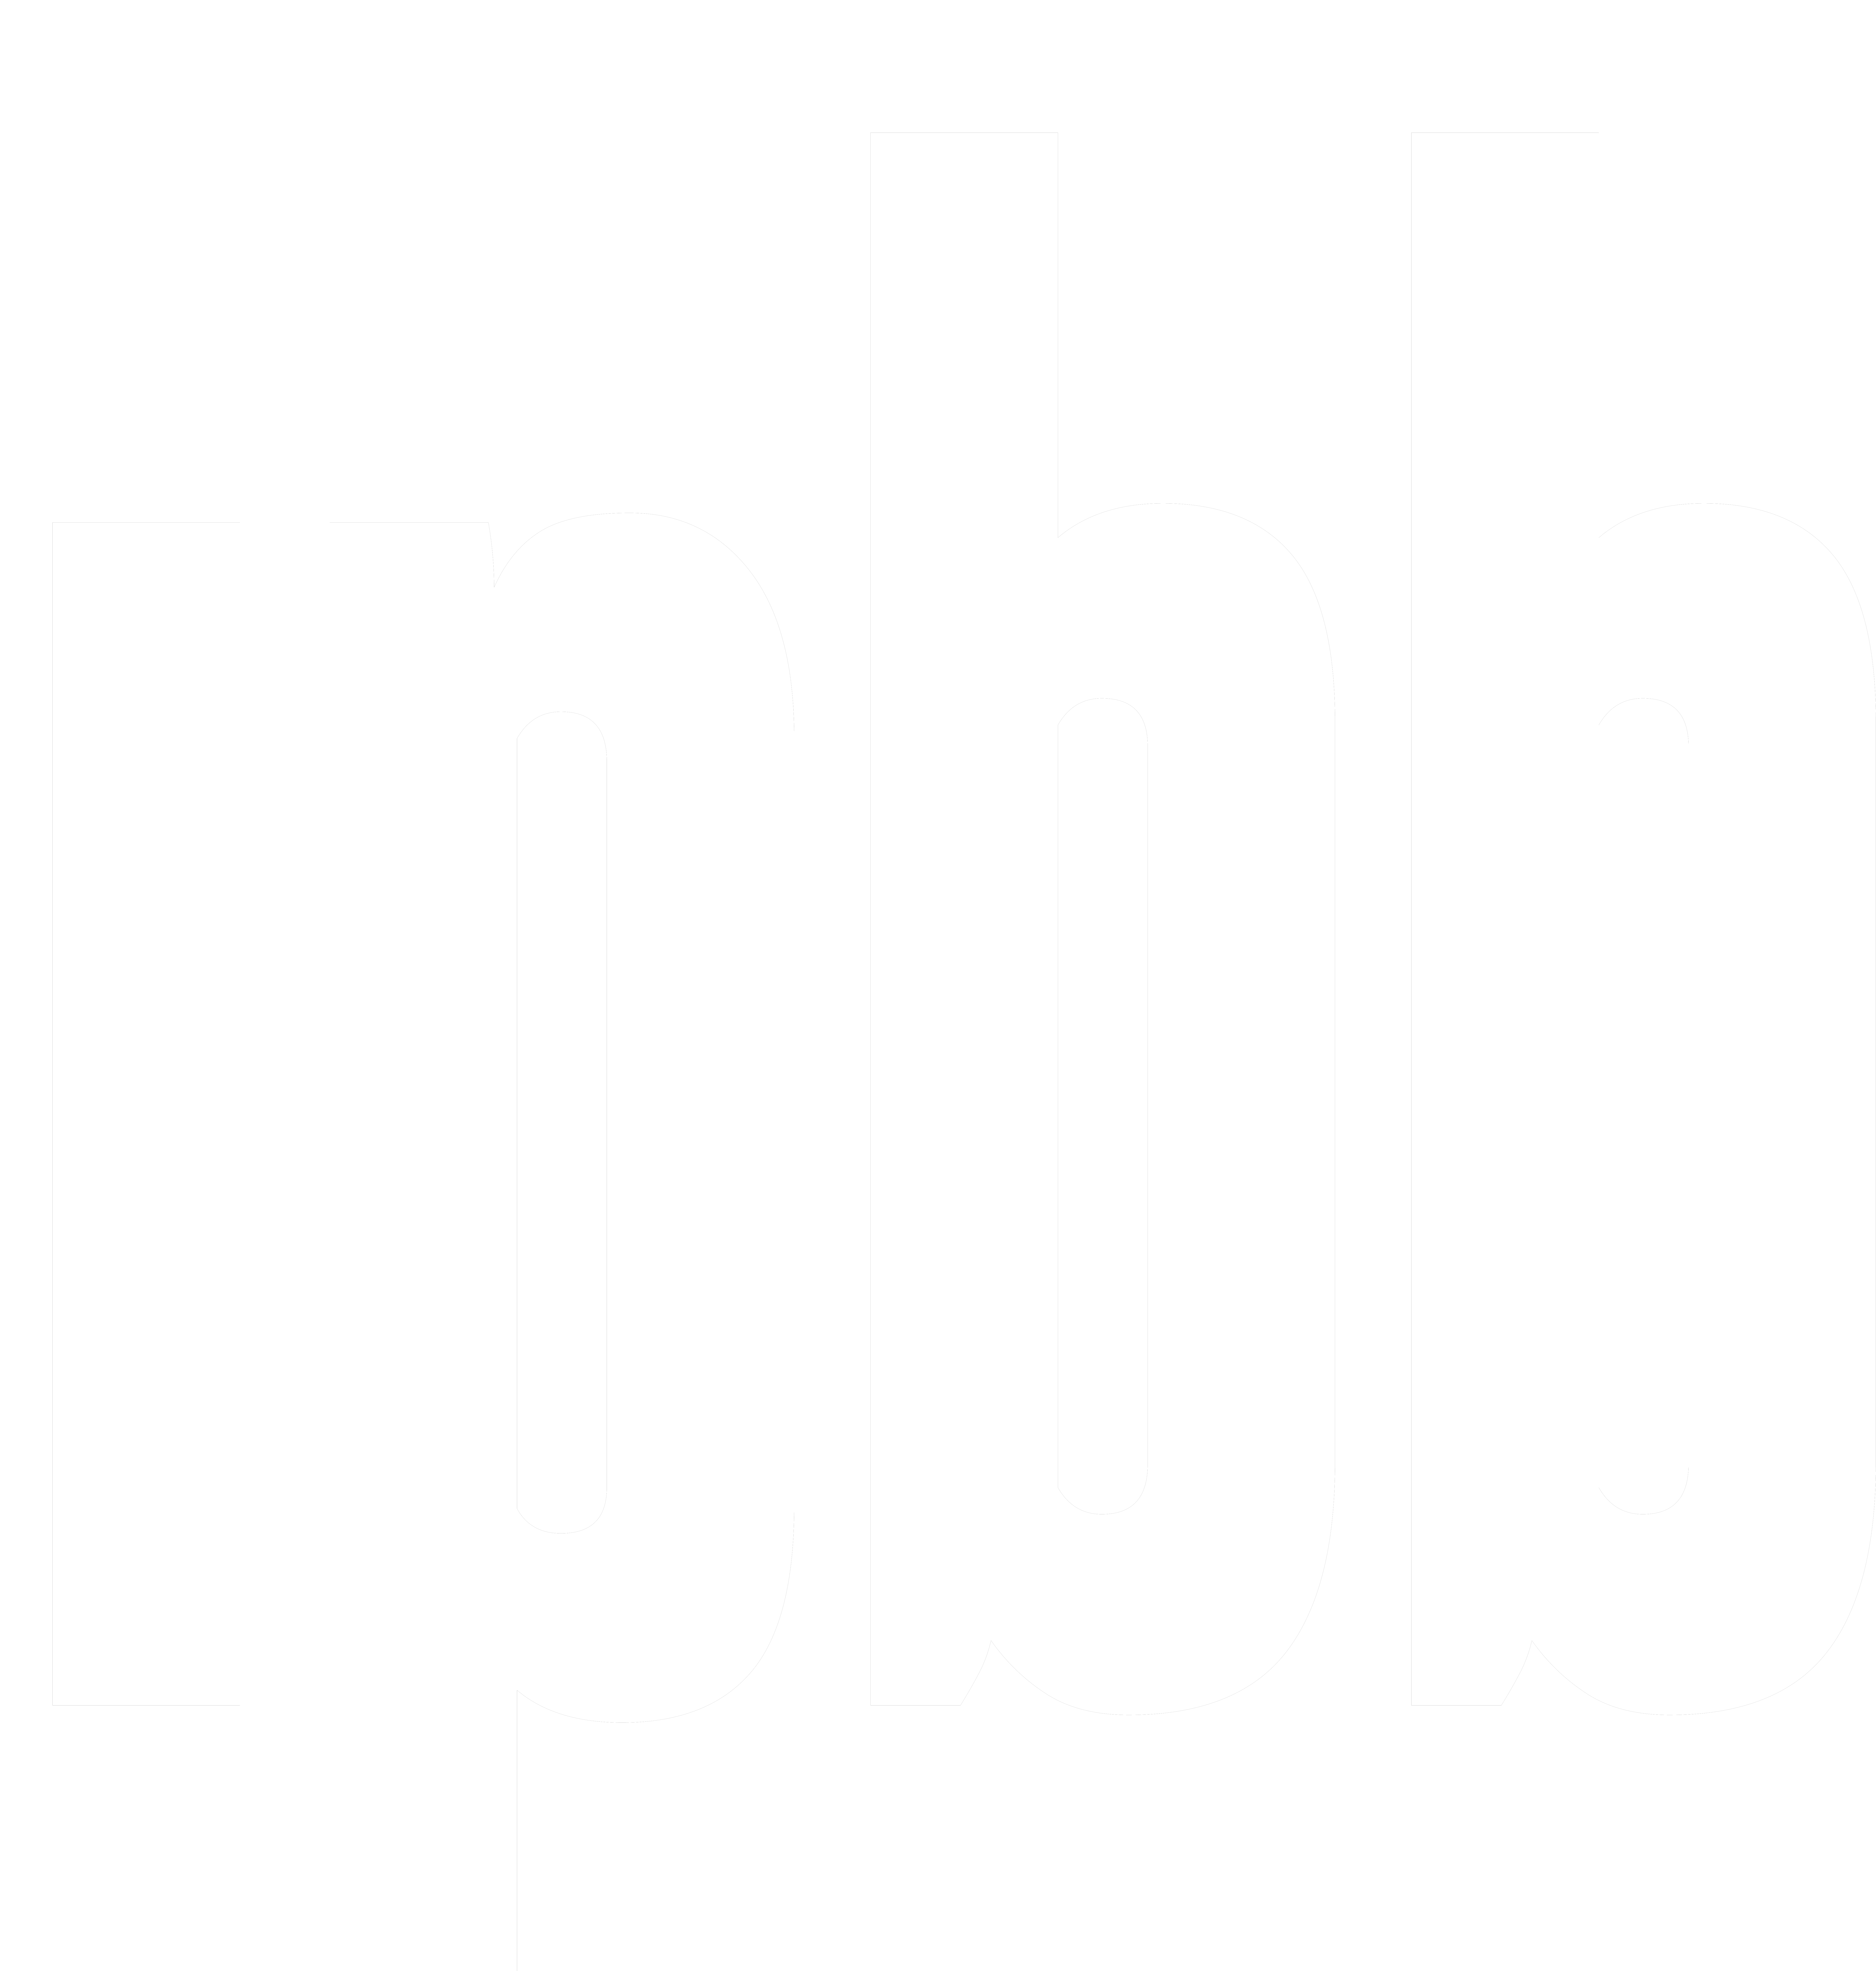 IPBB